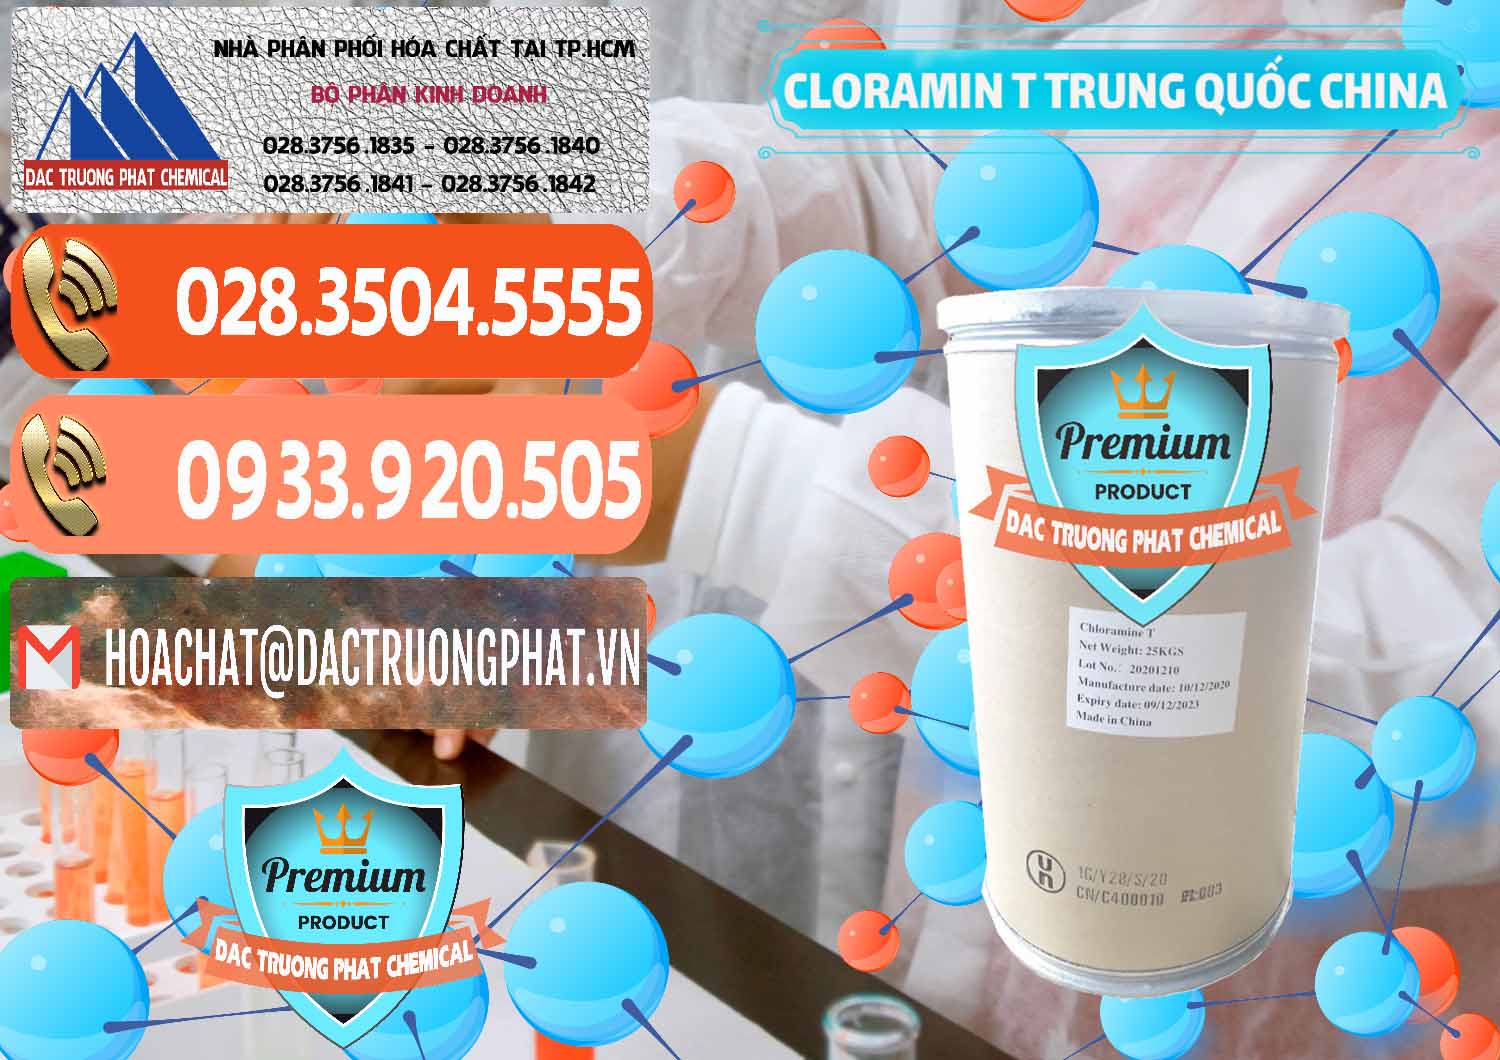 Cty chuyên kinh doanh _ bán Cloramin T Khử Trùng, Diệt Khuẩn Trung Quốc China - 0301 - Nơi chuyên phân phối ( nhập khẩu ) hóa chất tại TP.HCM - hoachatmientay.com